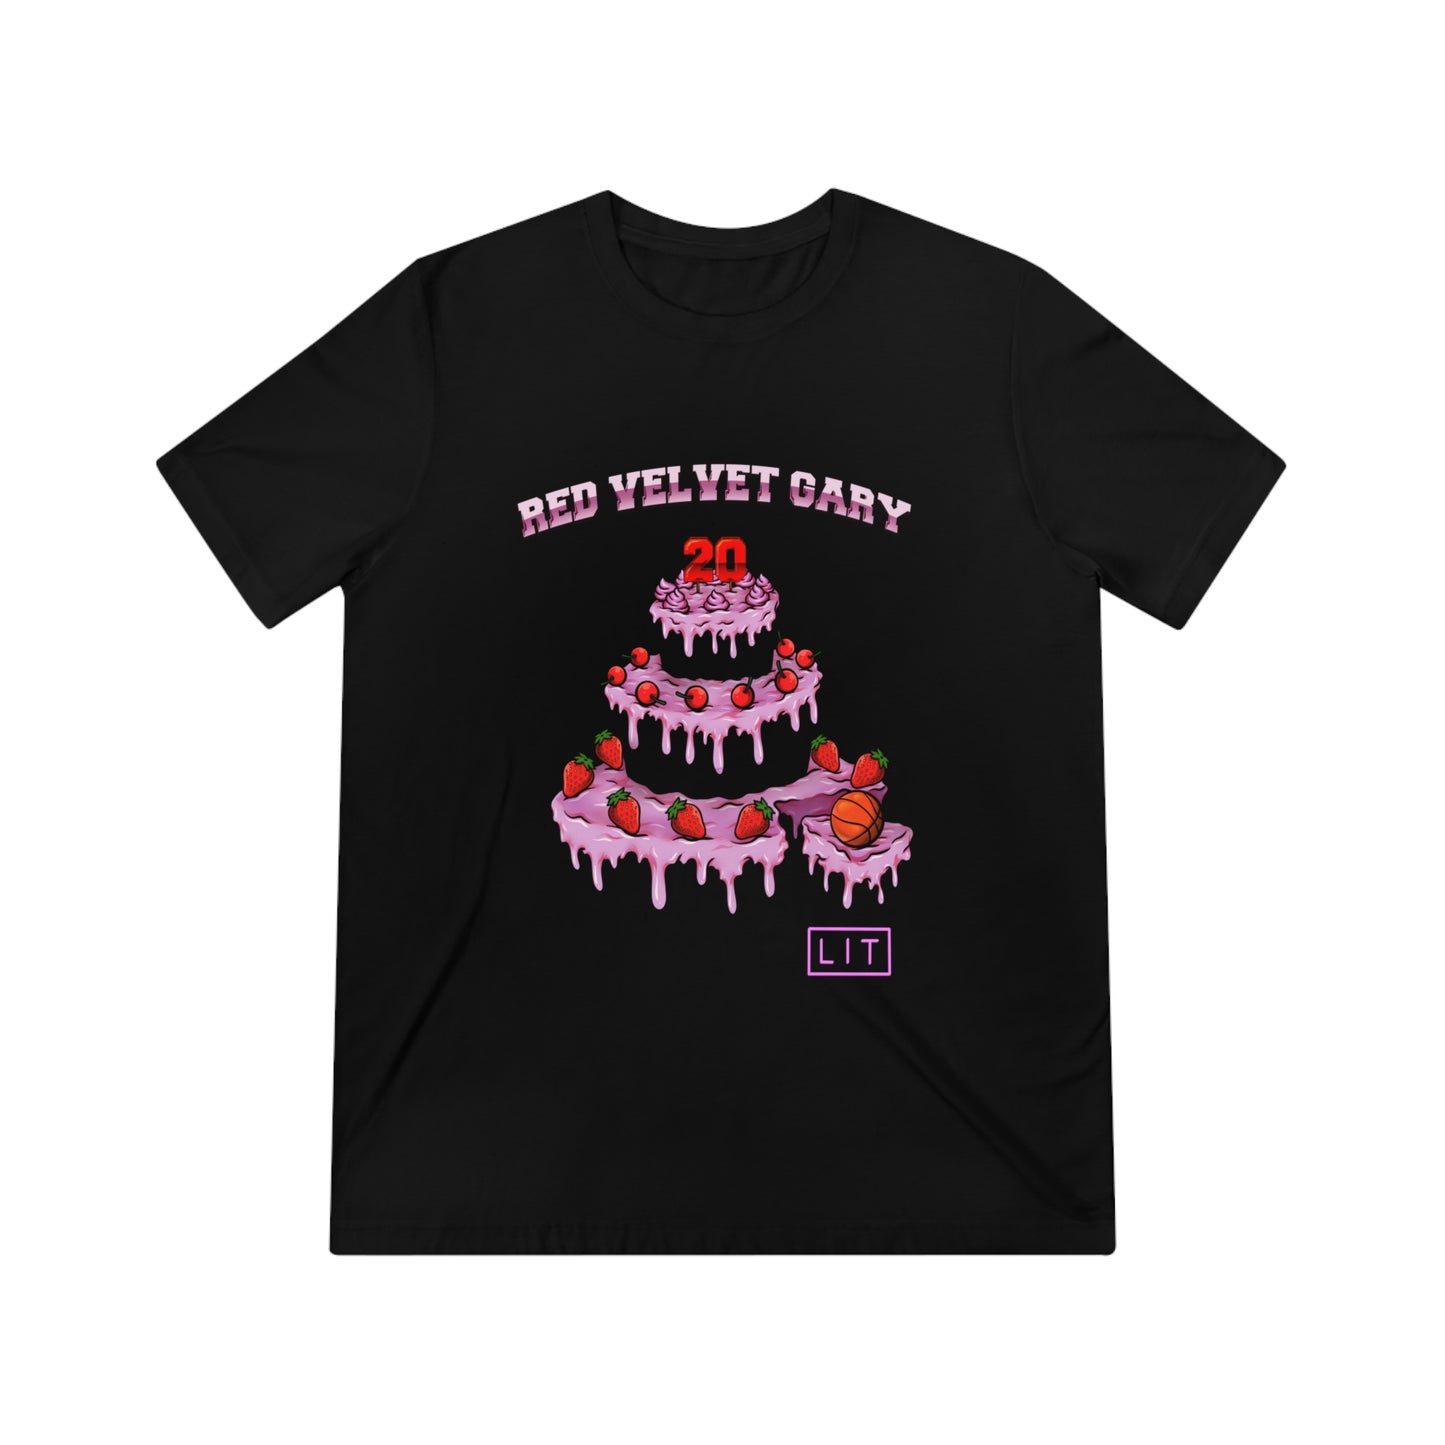 Red Velvet Gary - T-Shirt